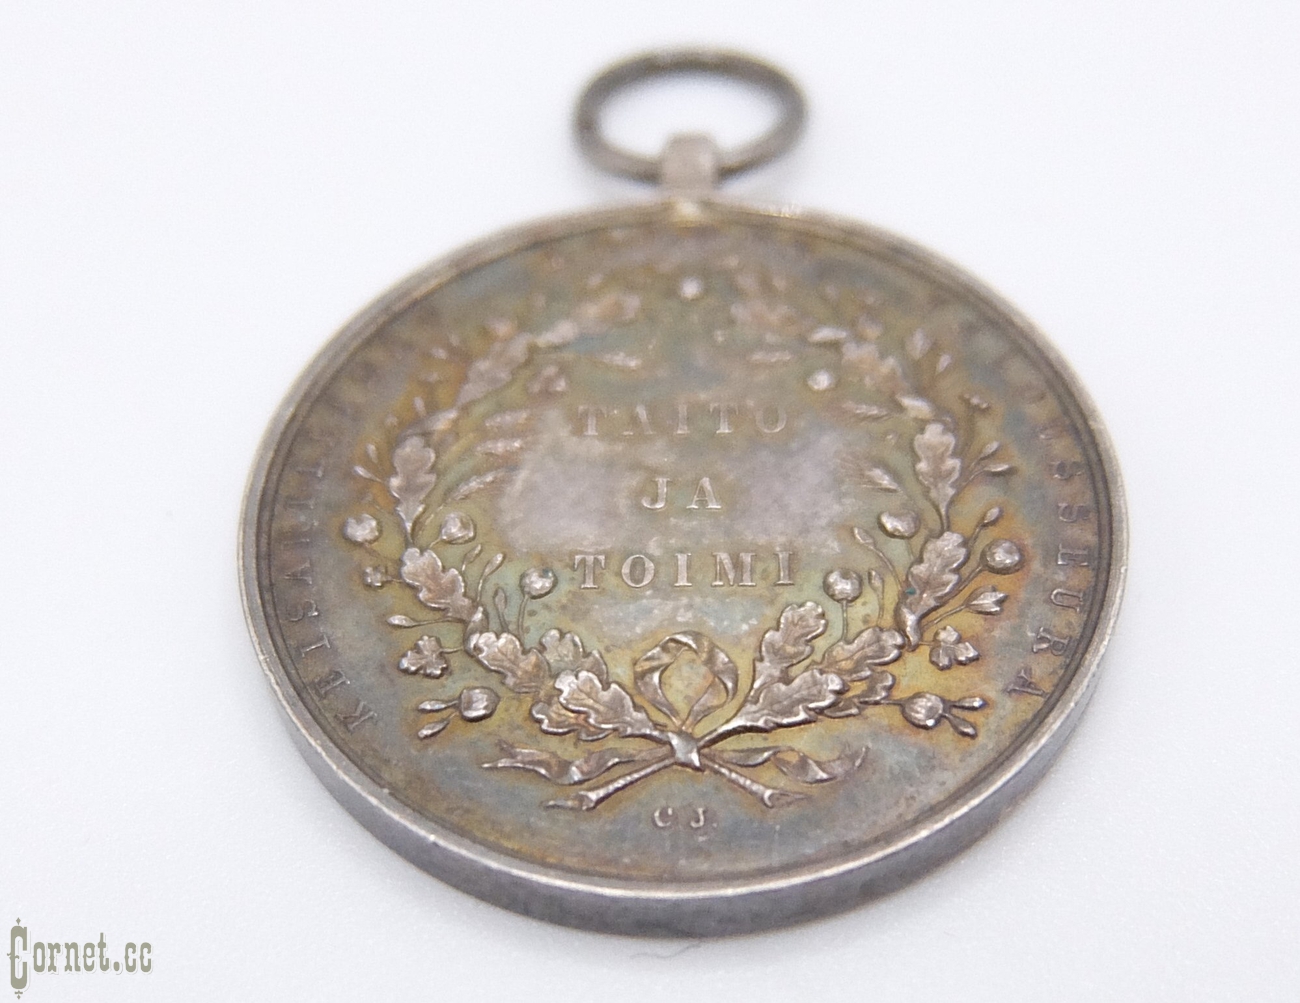 Медаль "За труды и усердие" от Финского сельскохозяйственного общества, периода Александра III